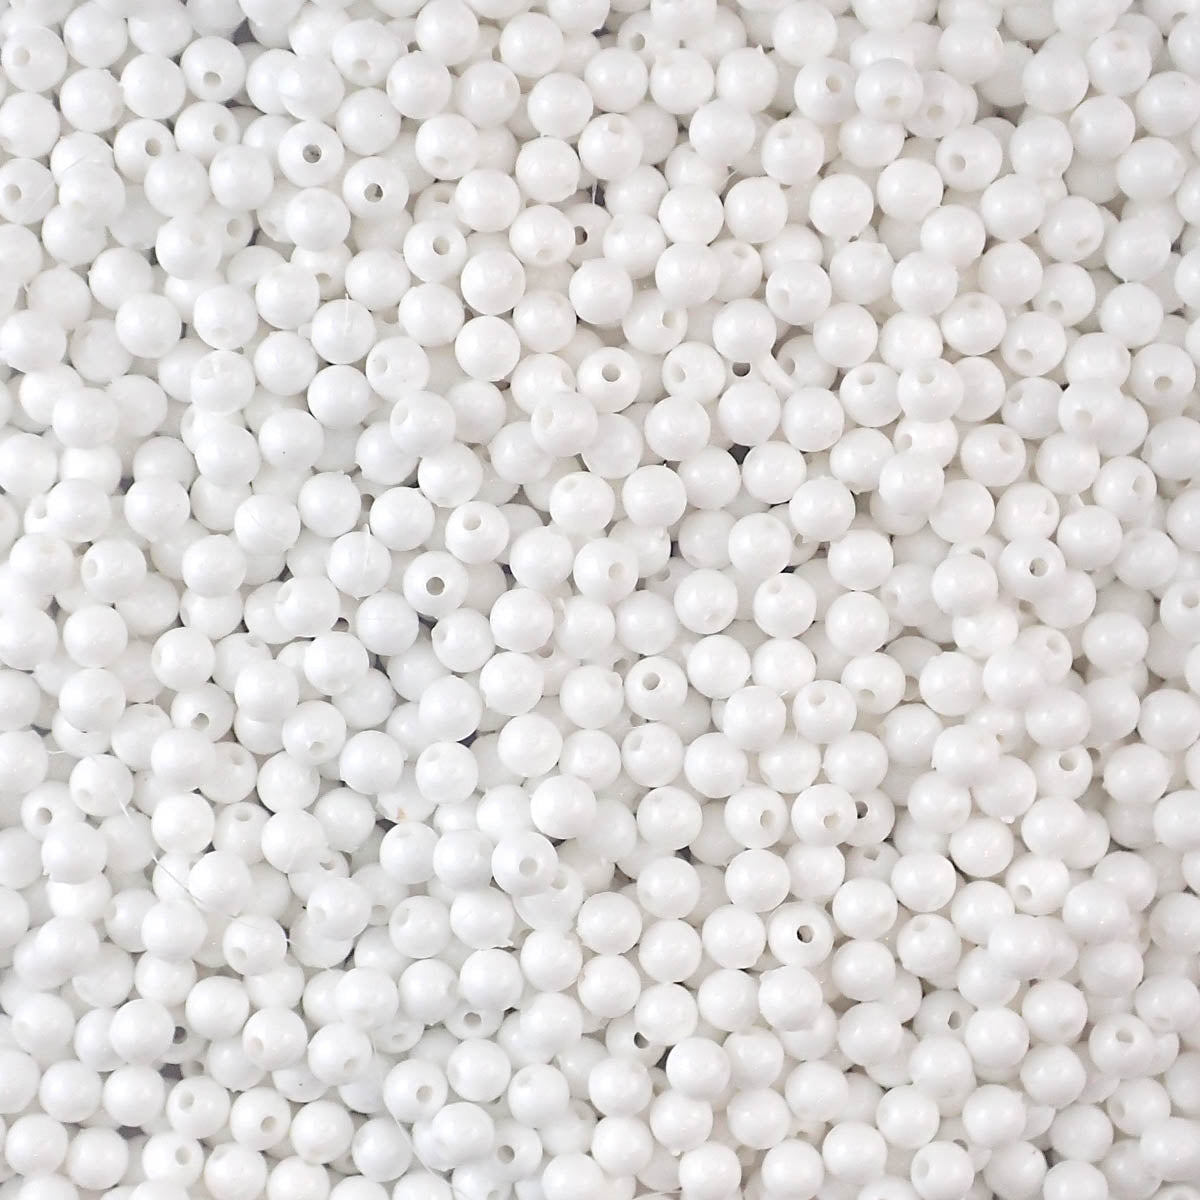 White Plastic 6mm Round Beads, 500 beads